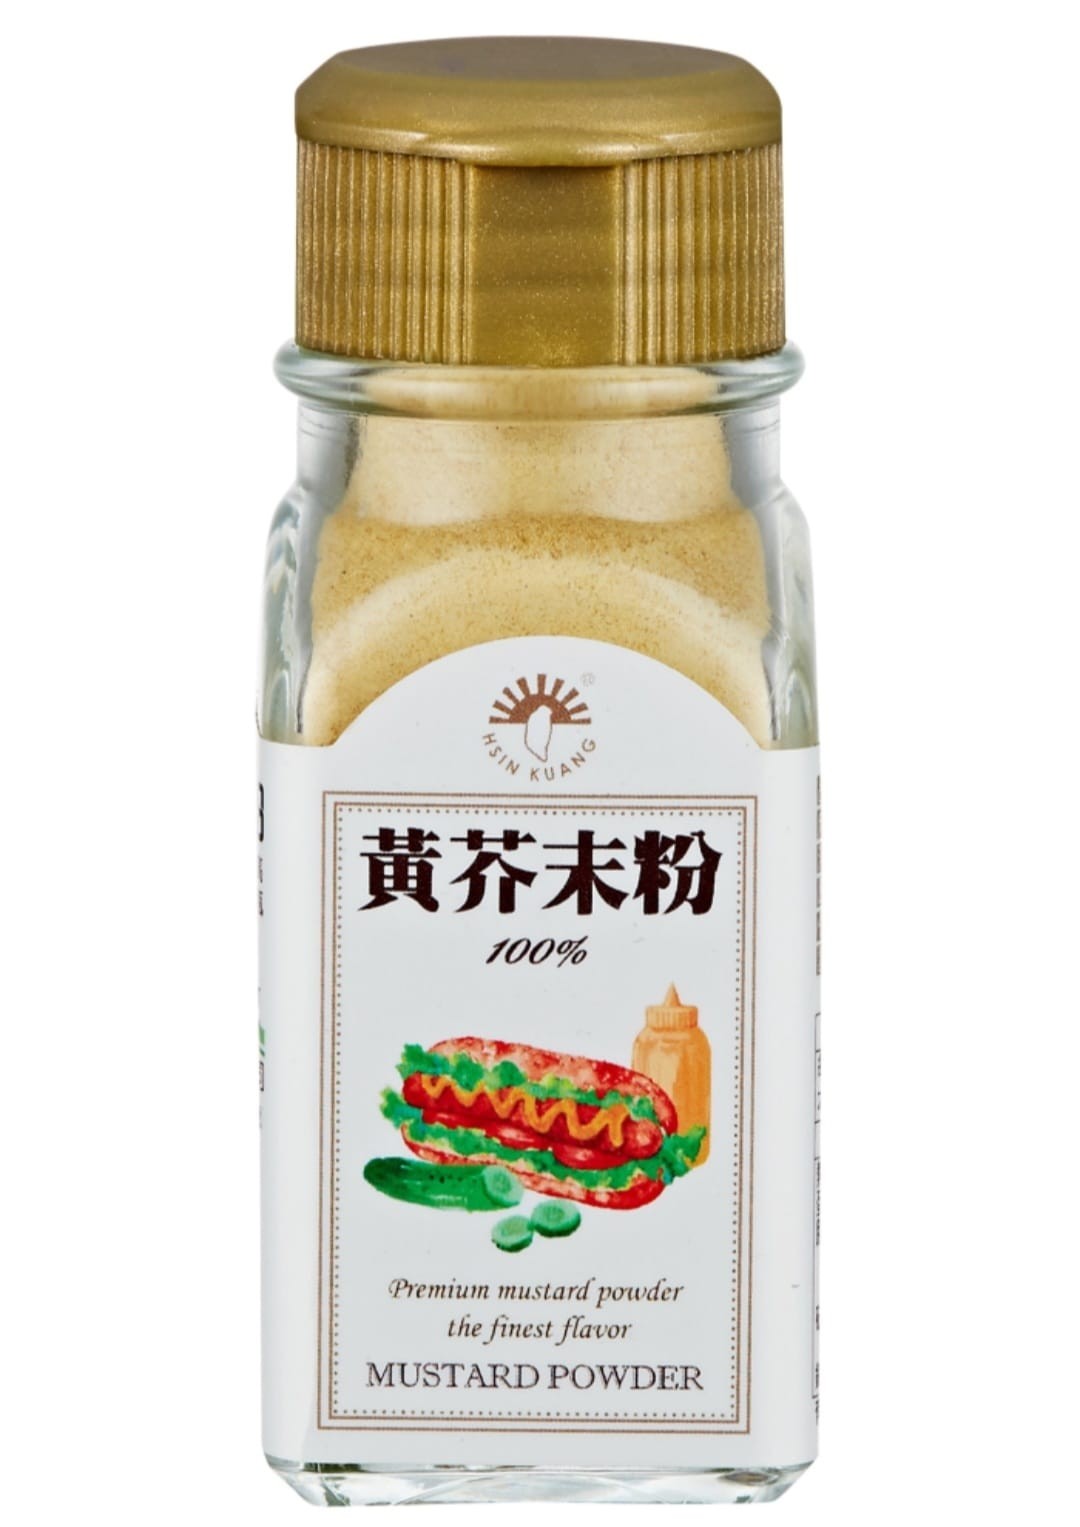 芥末椒鹽粉 | 調味料 | 罐裝 | Tomax小磨坊國際